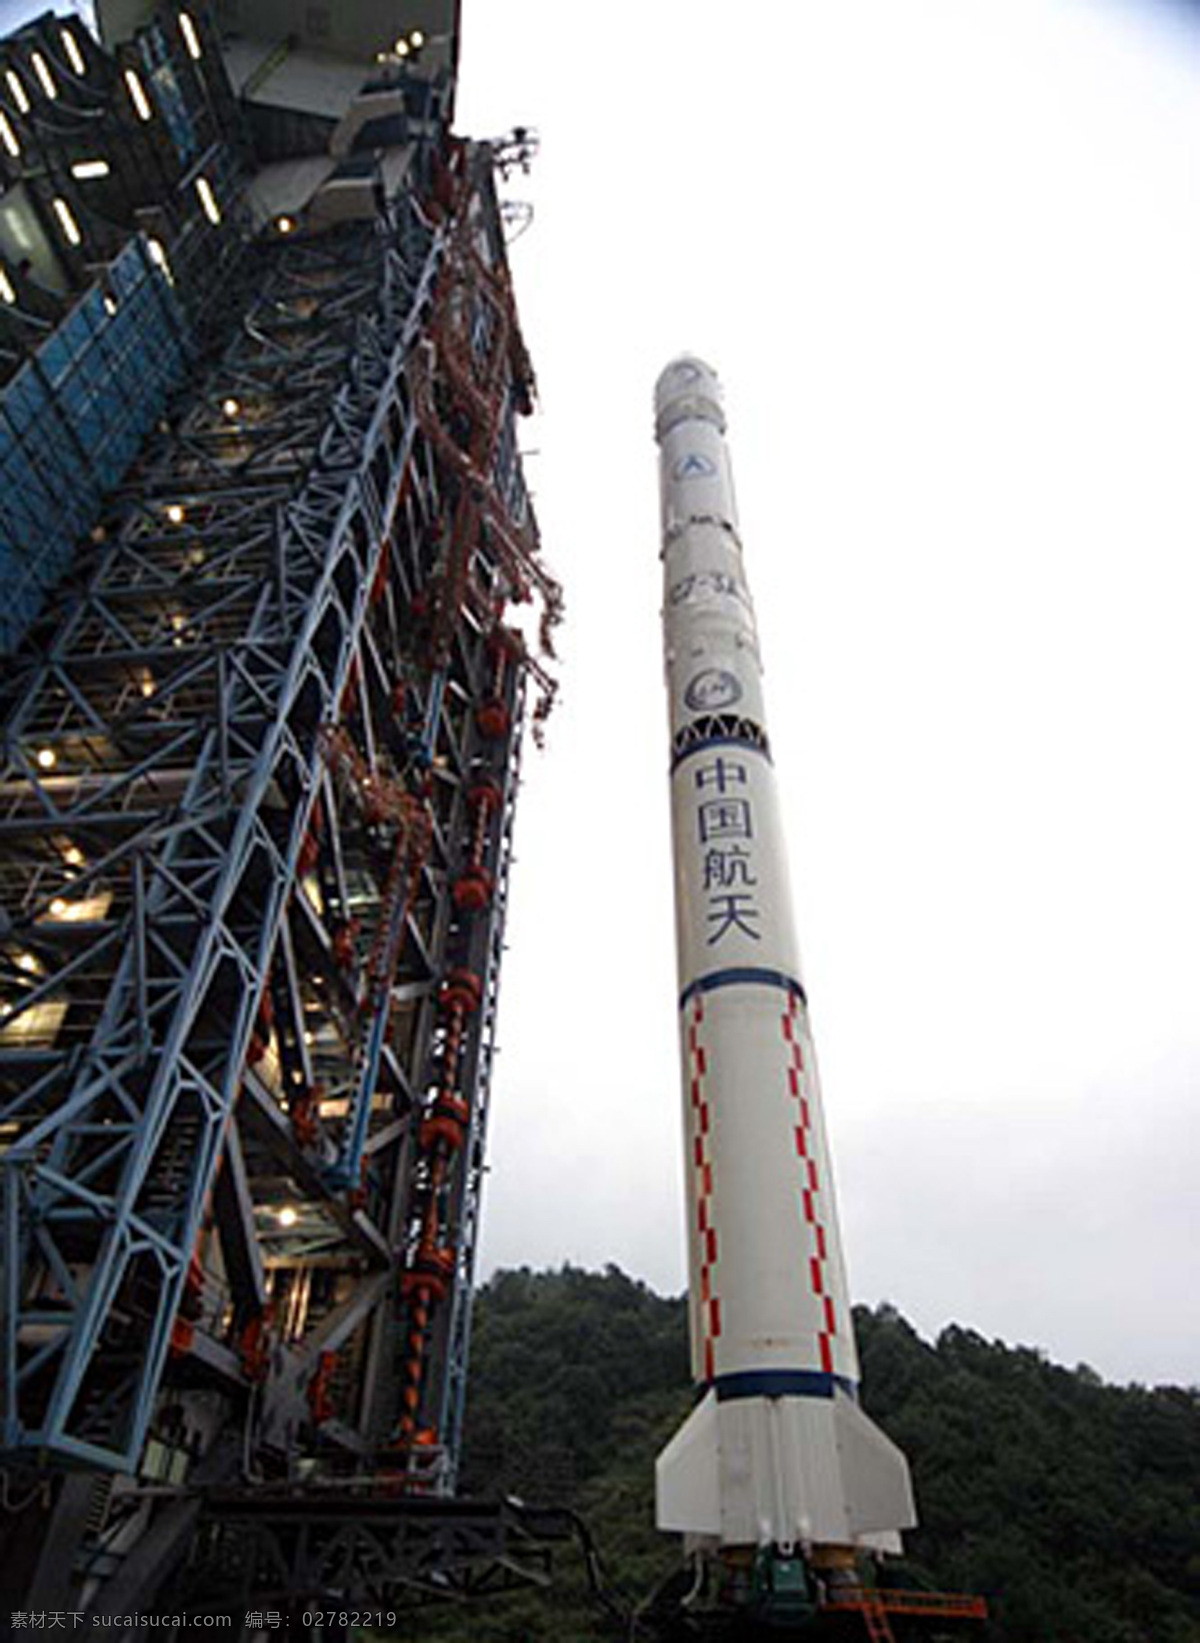 嫦娥 号 长三甲 运载火箭 现代科技 科学研究 摄影图库